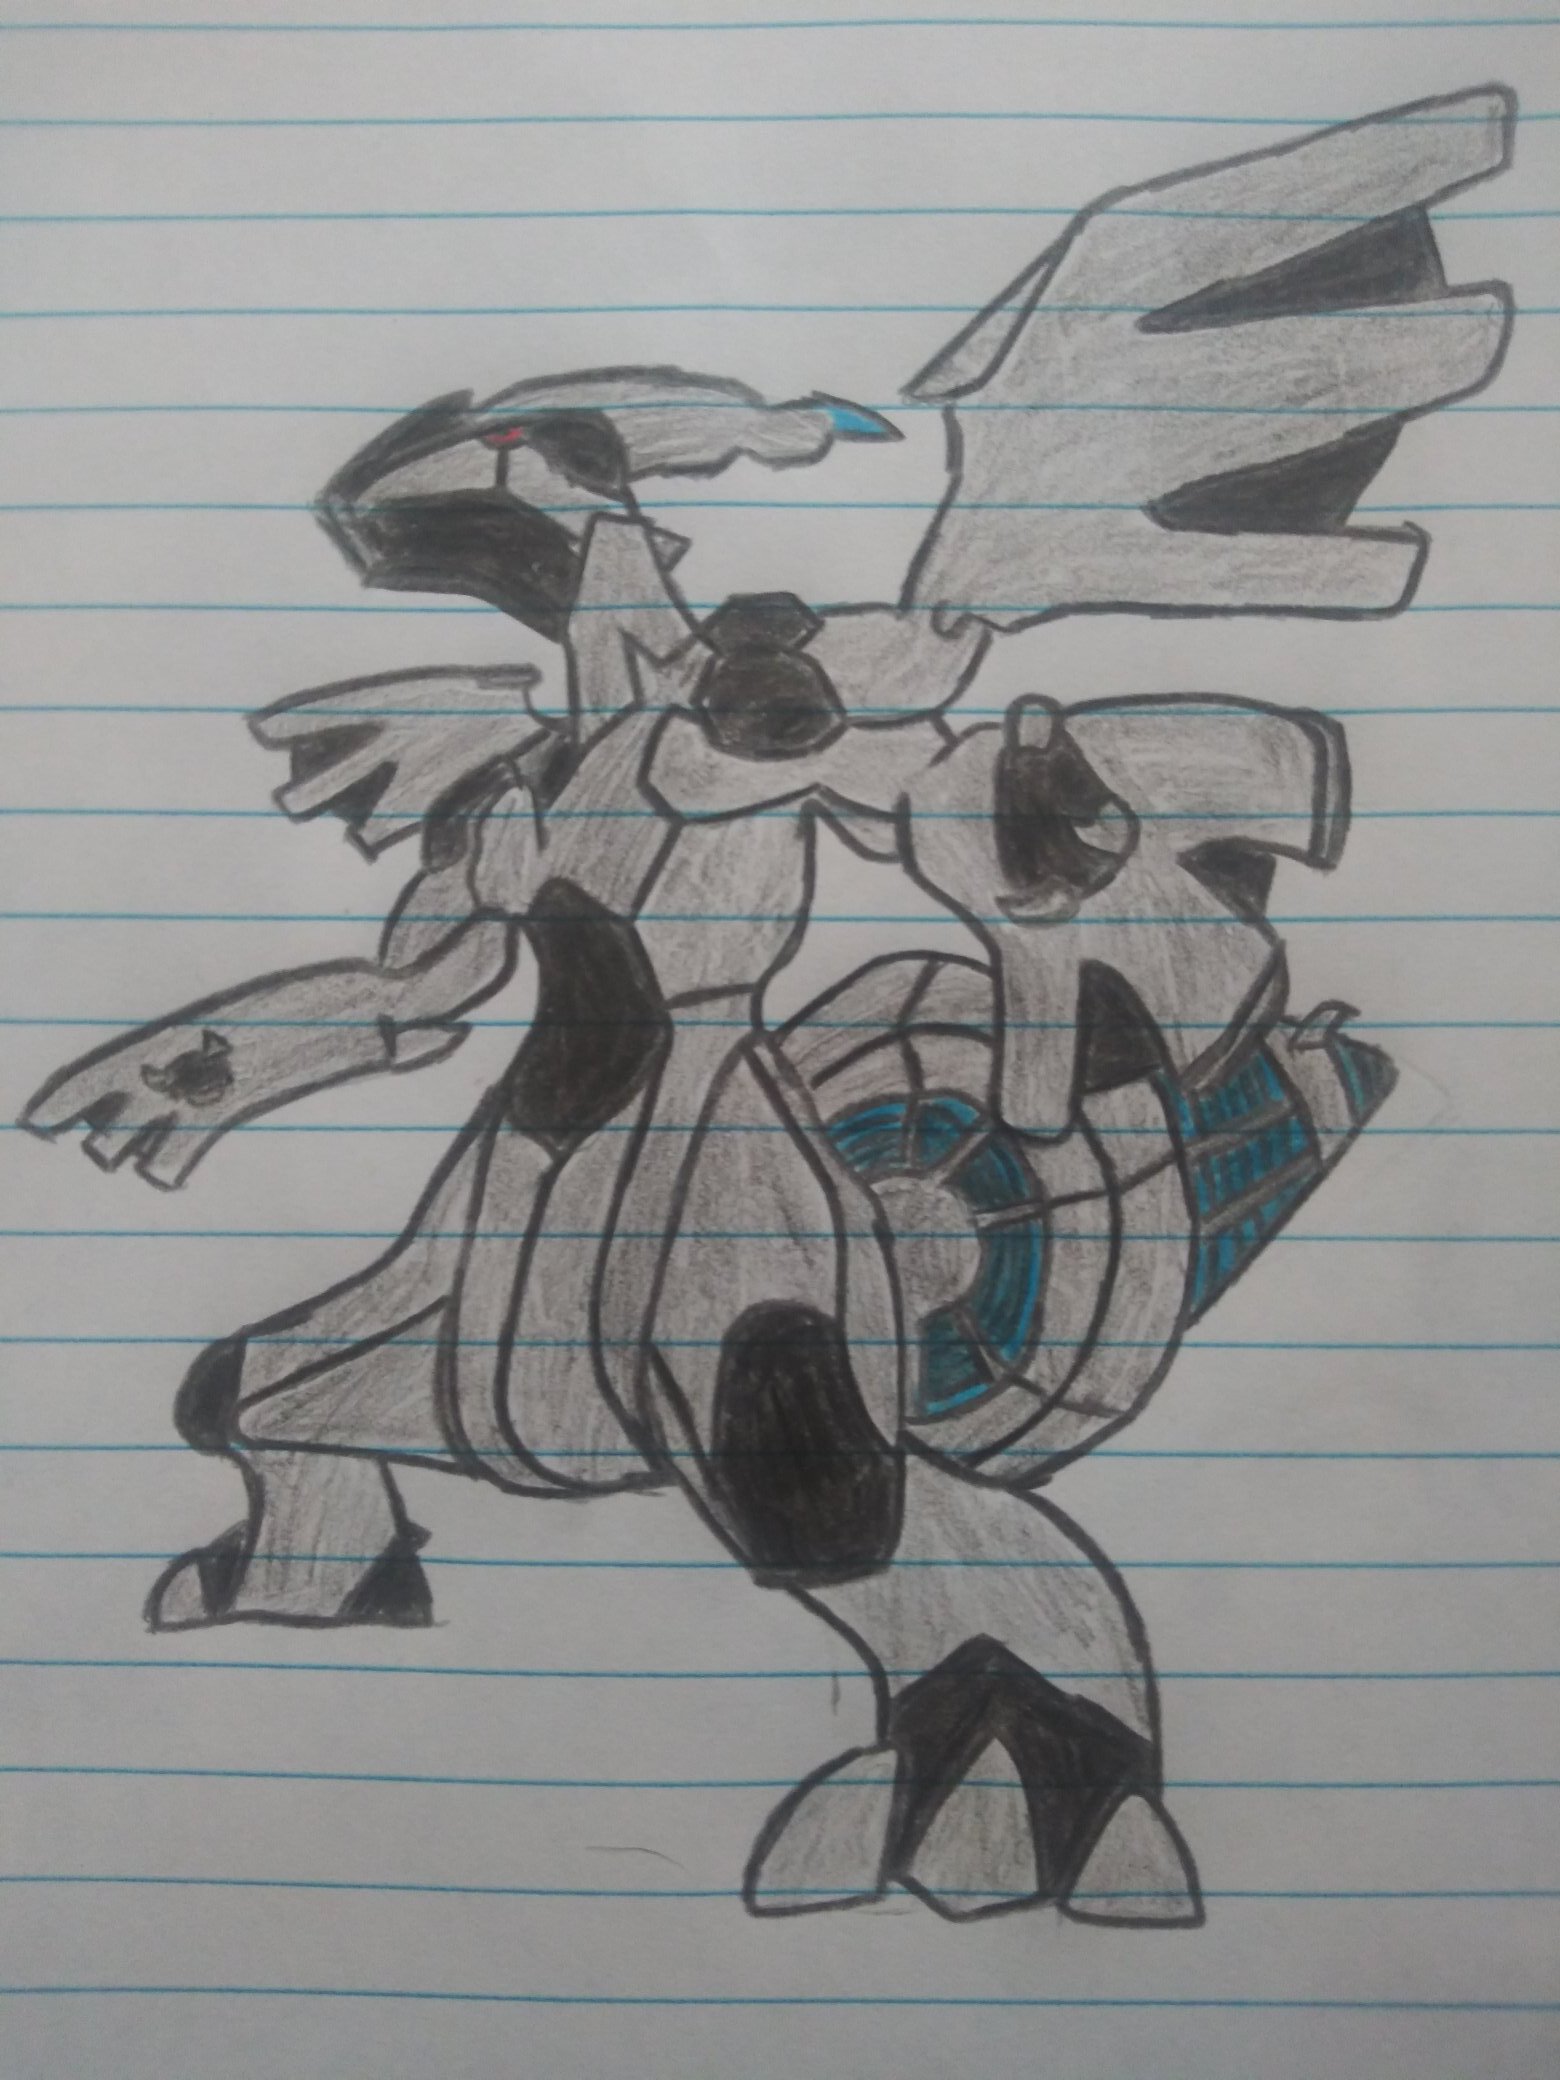 reshiram and zekrom (pokemon) drawn by gn